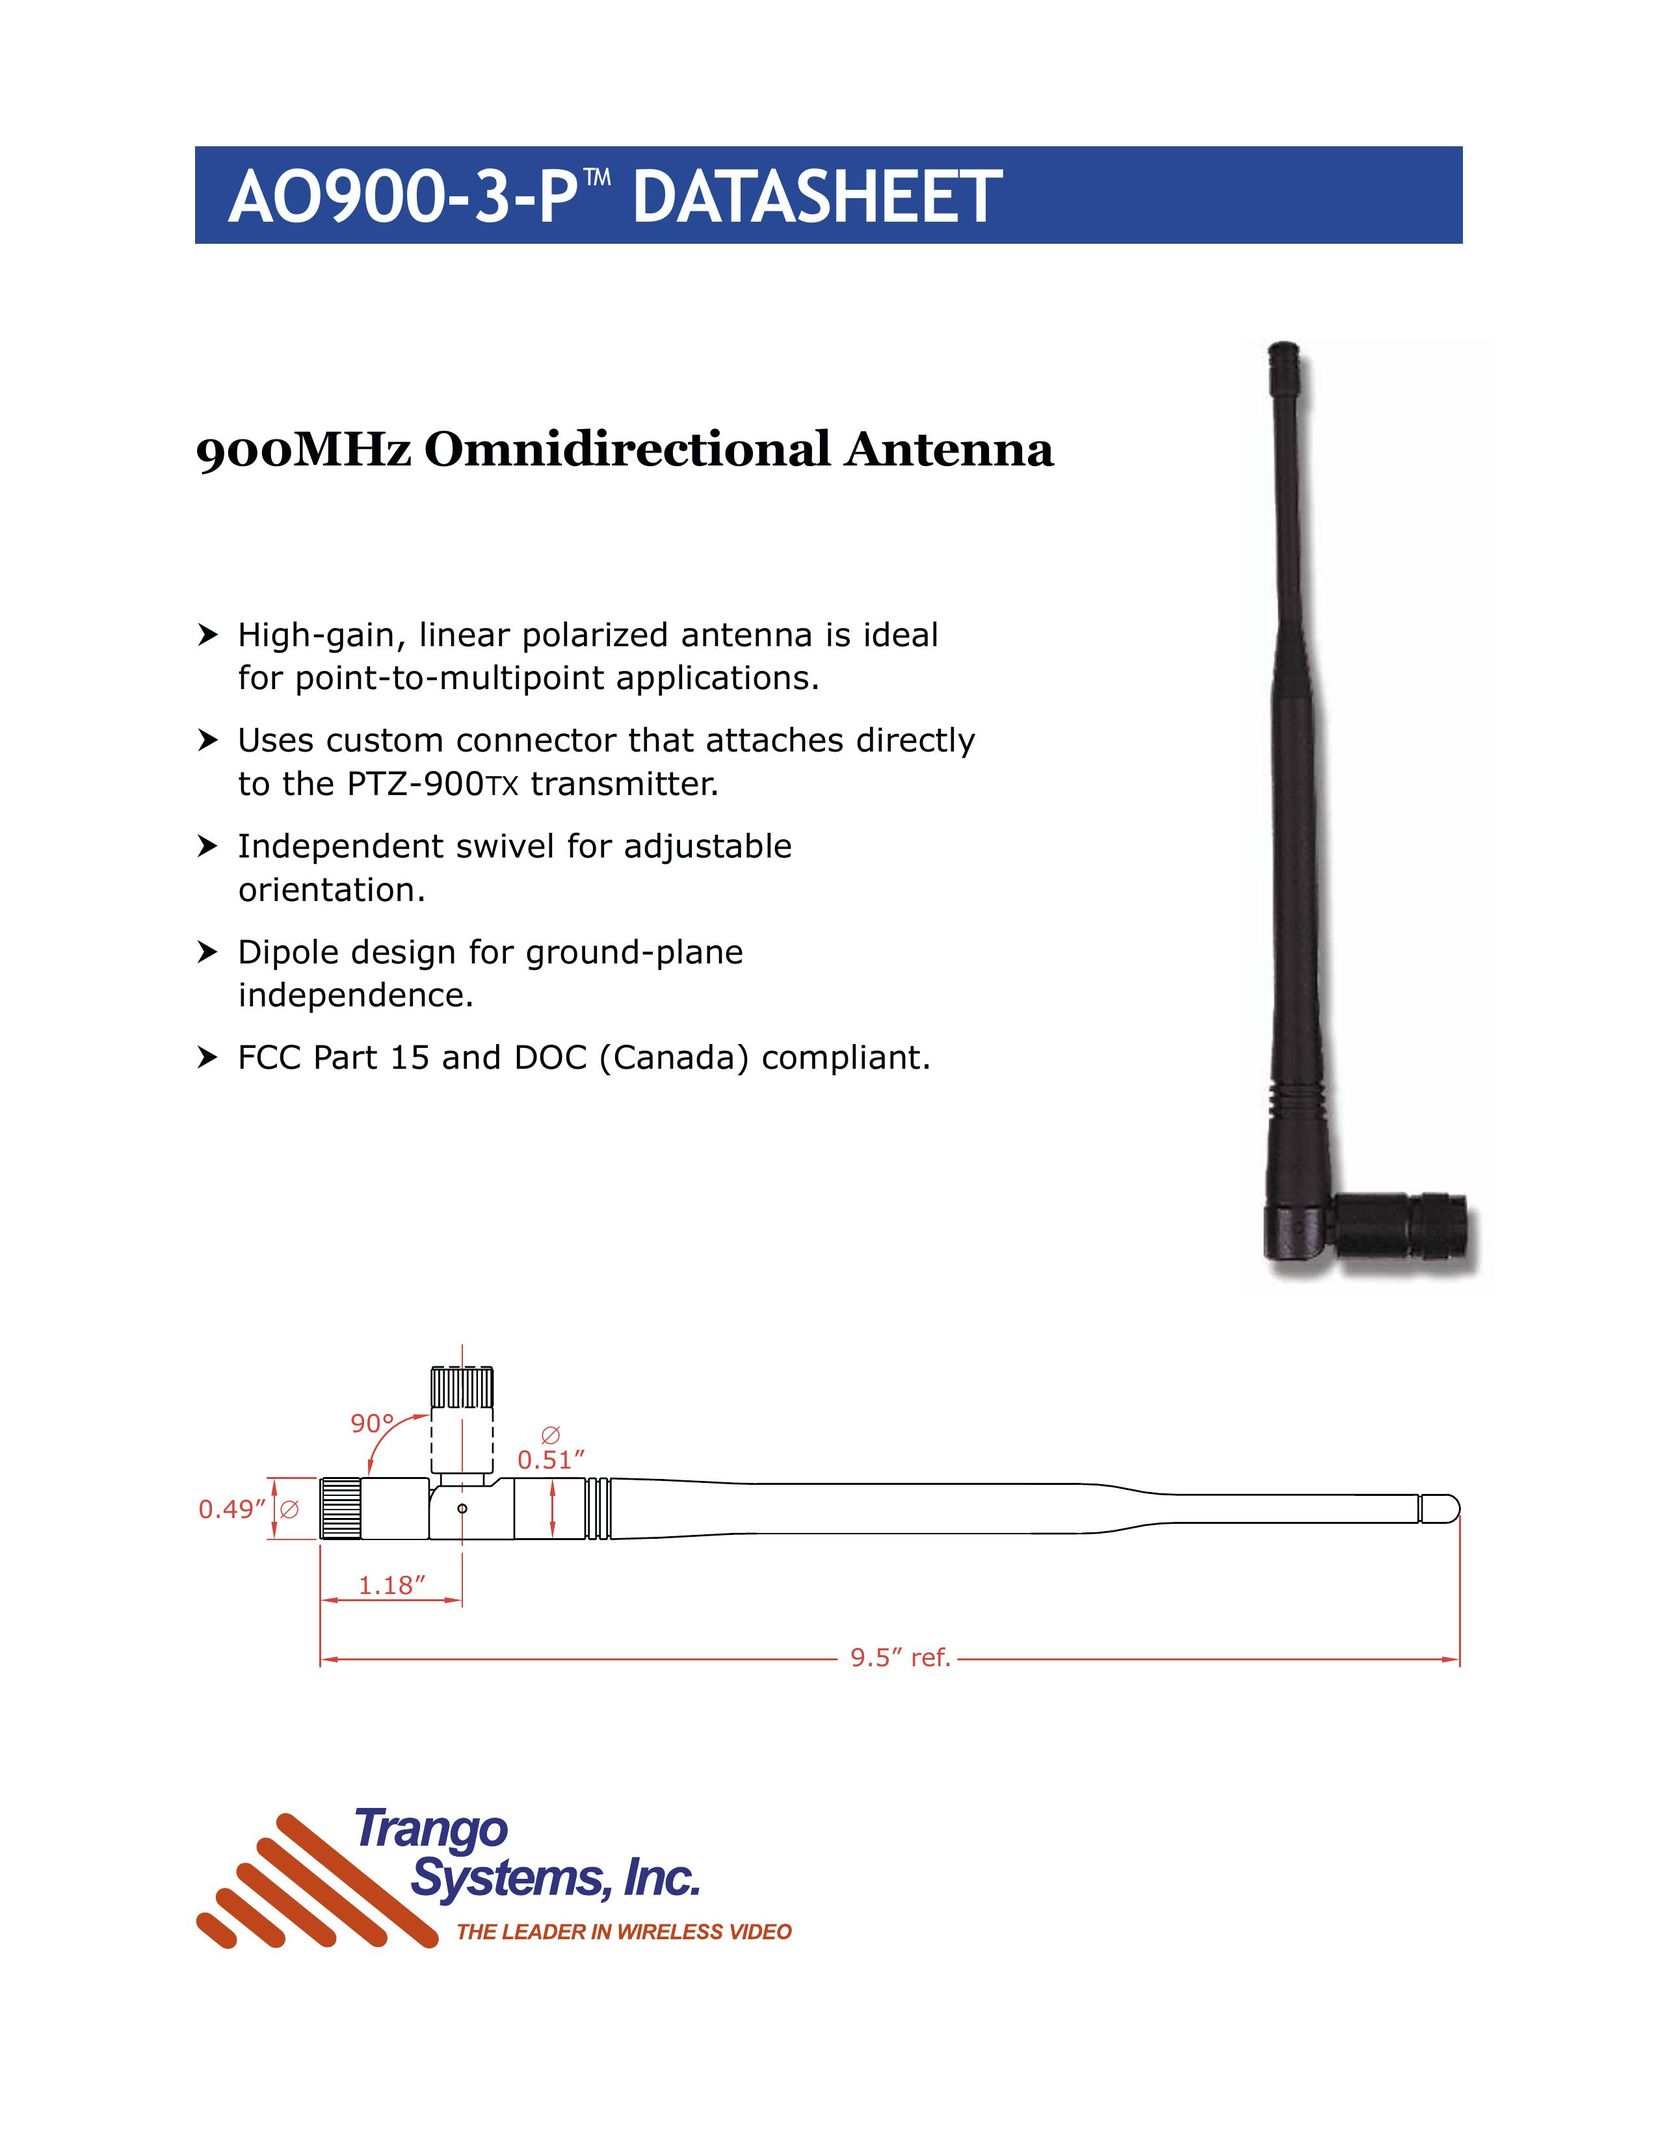 Trango Broadband AO900-3-P Stereo System User Manual